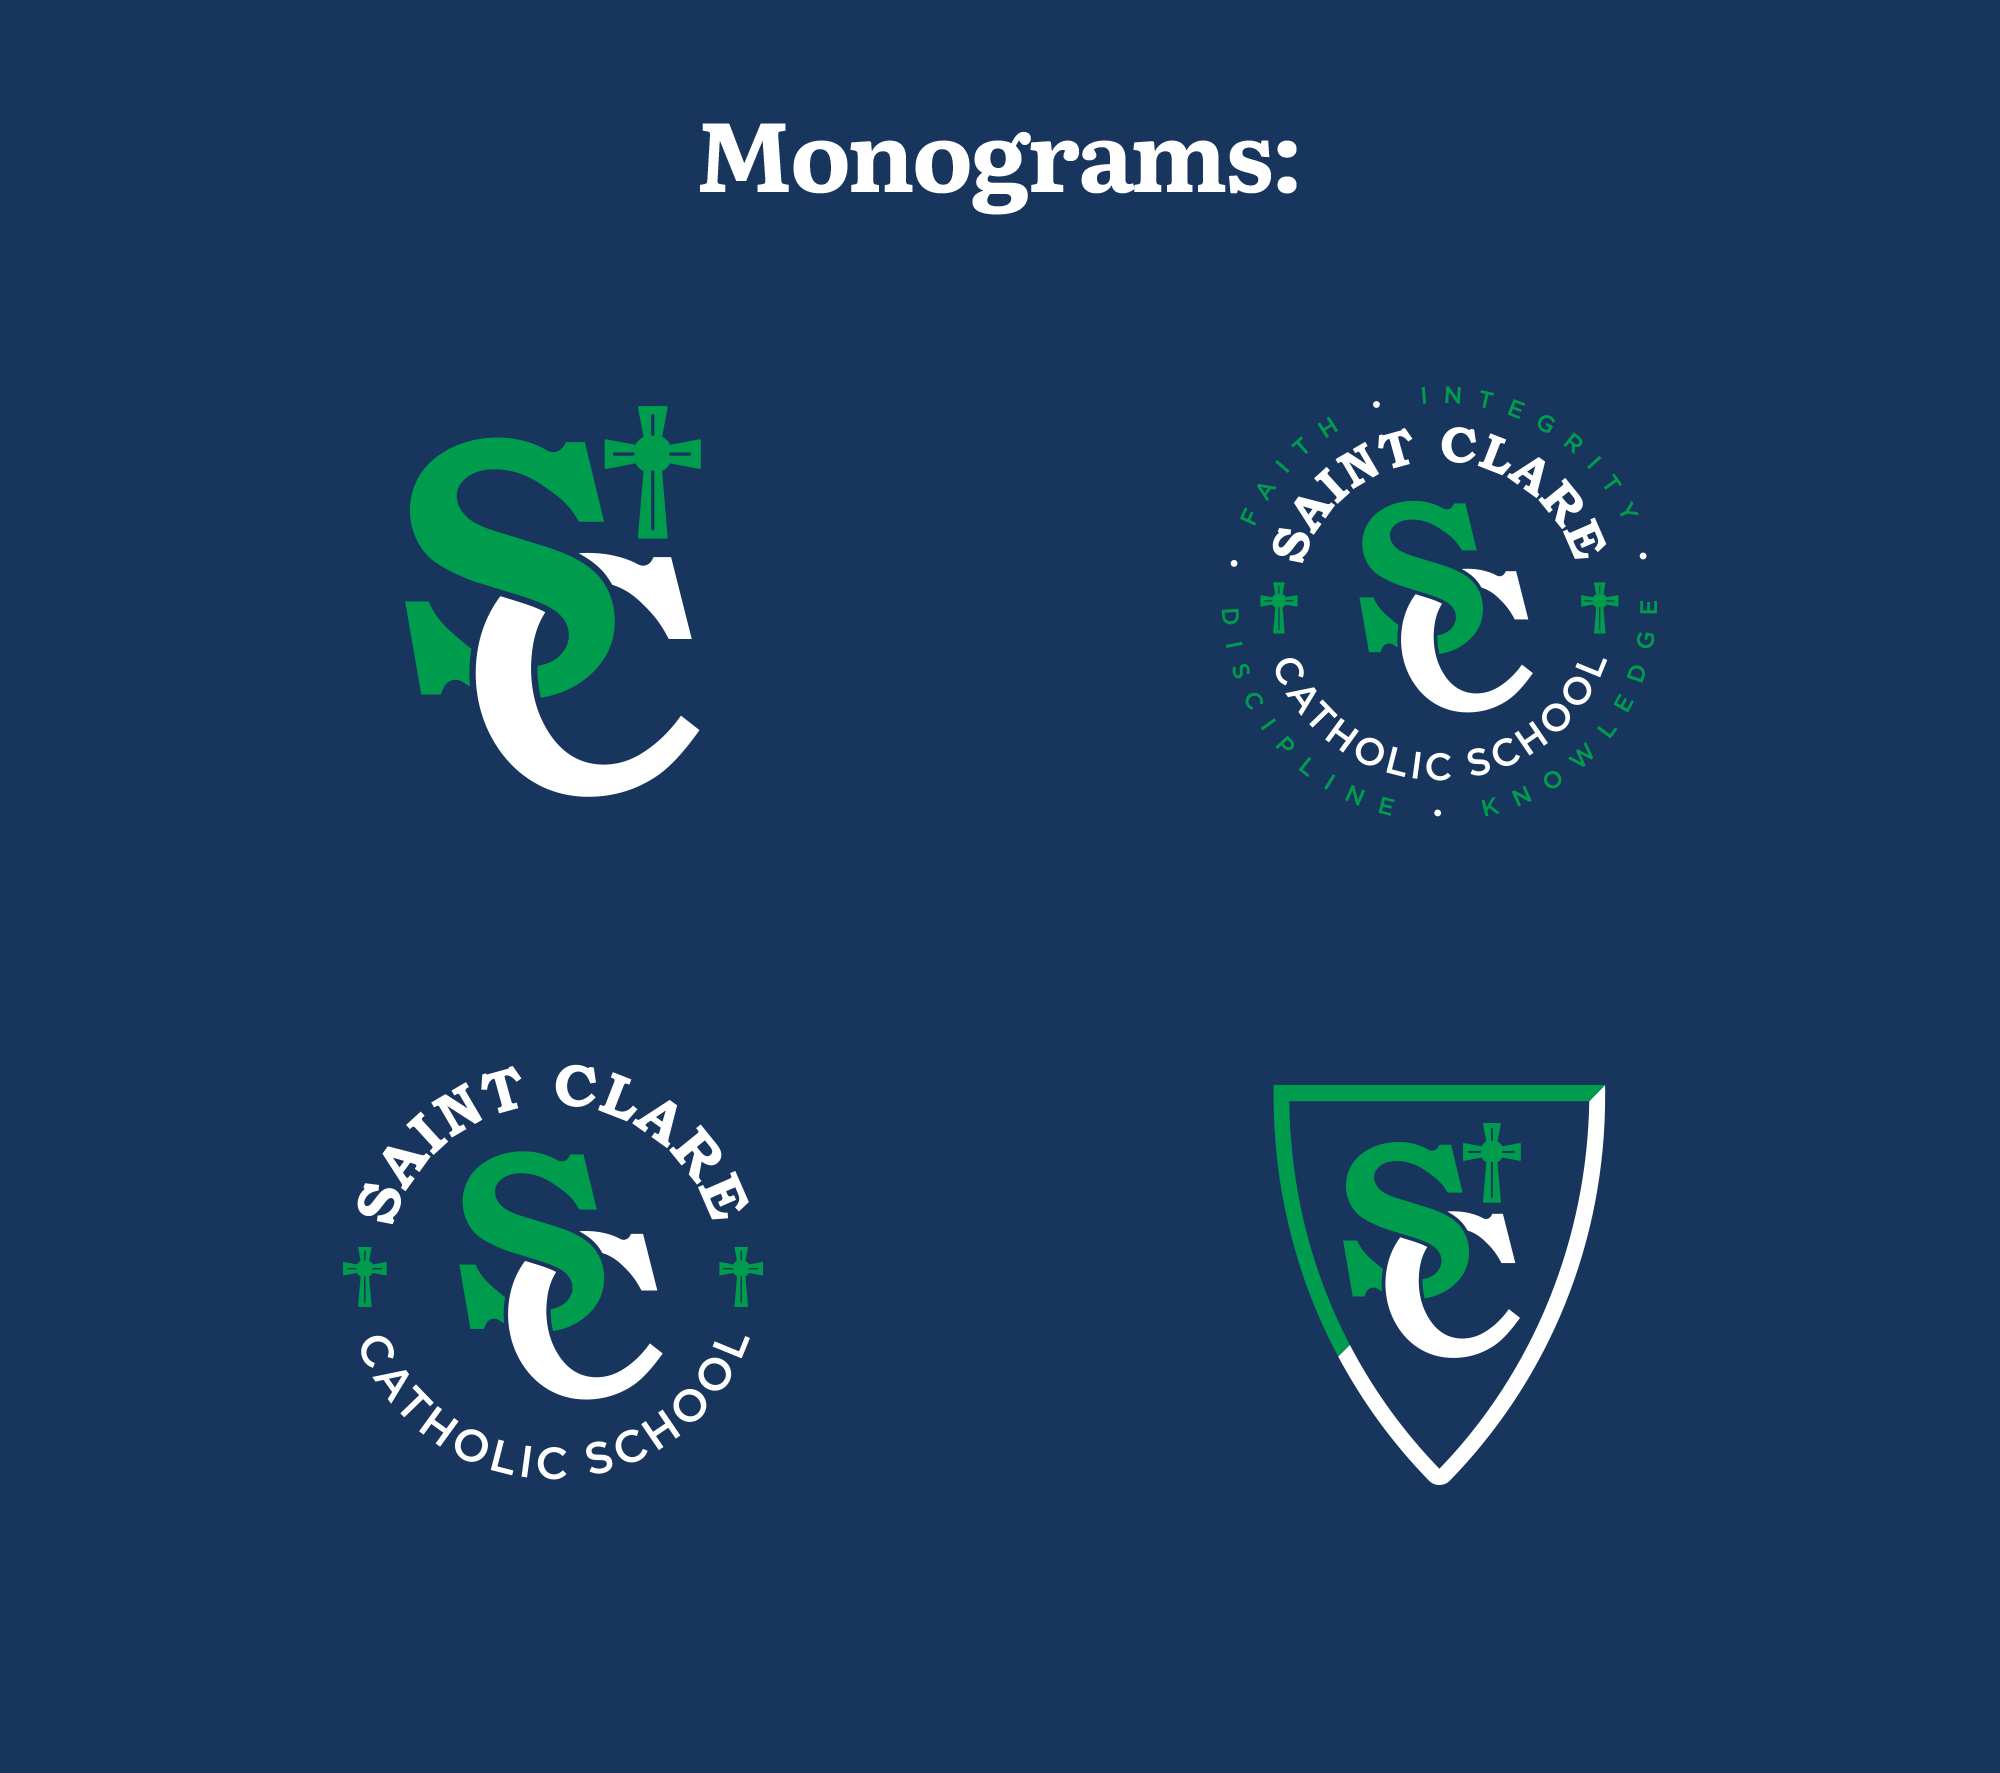 StC monogram logos